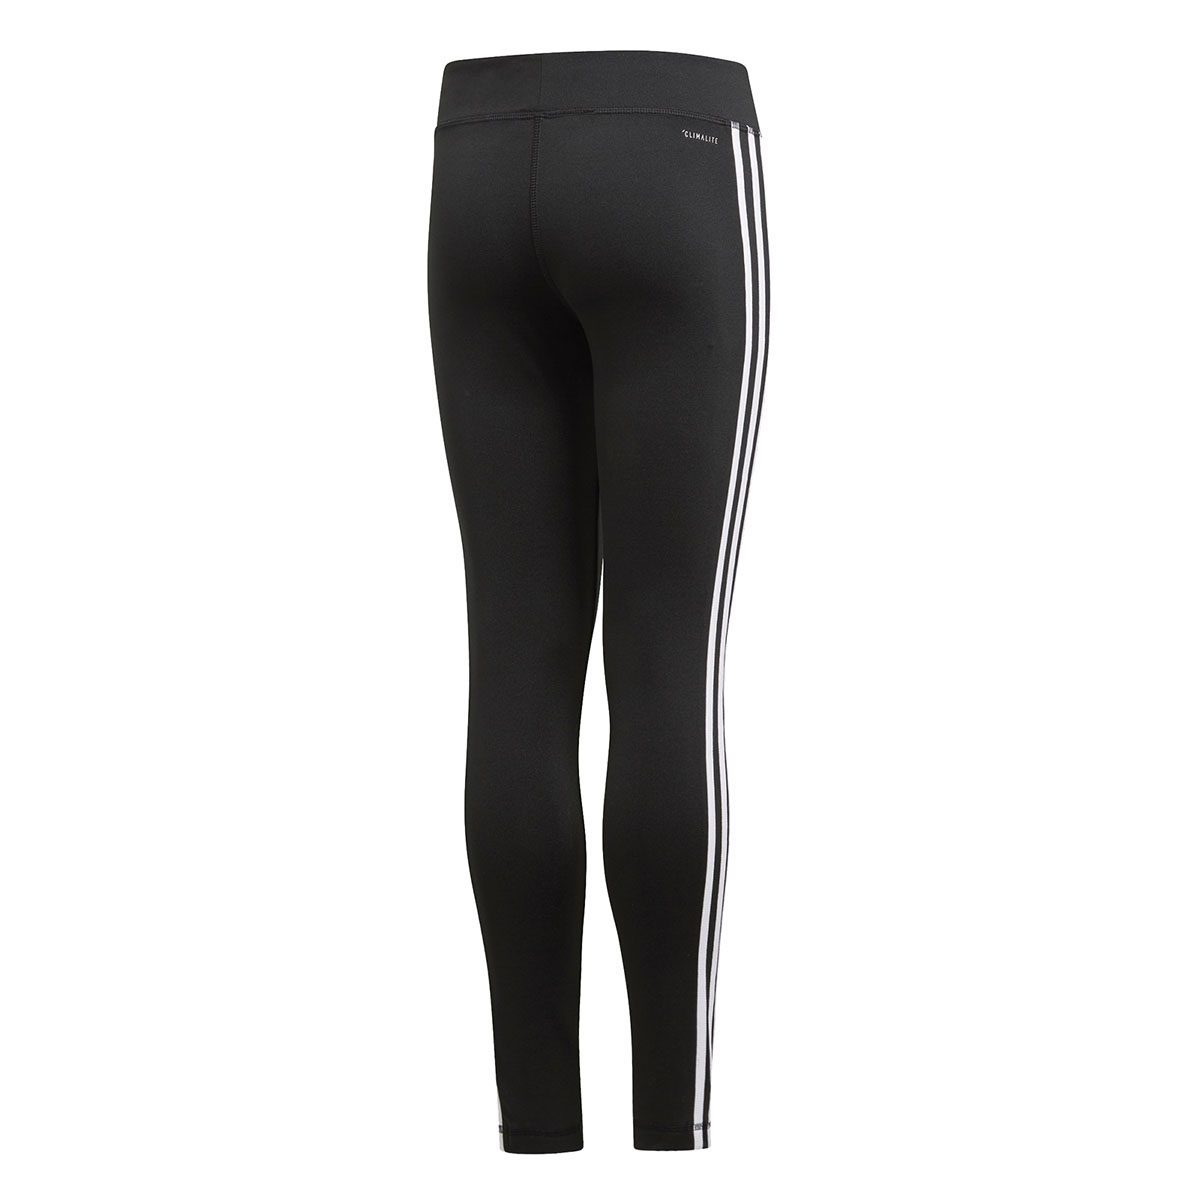 Adidas Girls Equip 3-Stripes Black/White Leggings DV2755 - WOOKI.COM